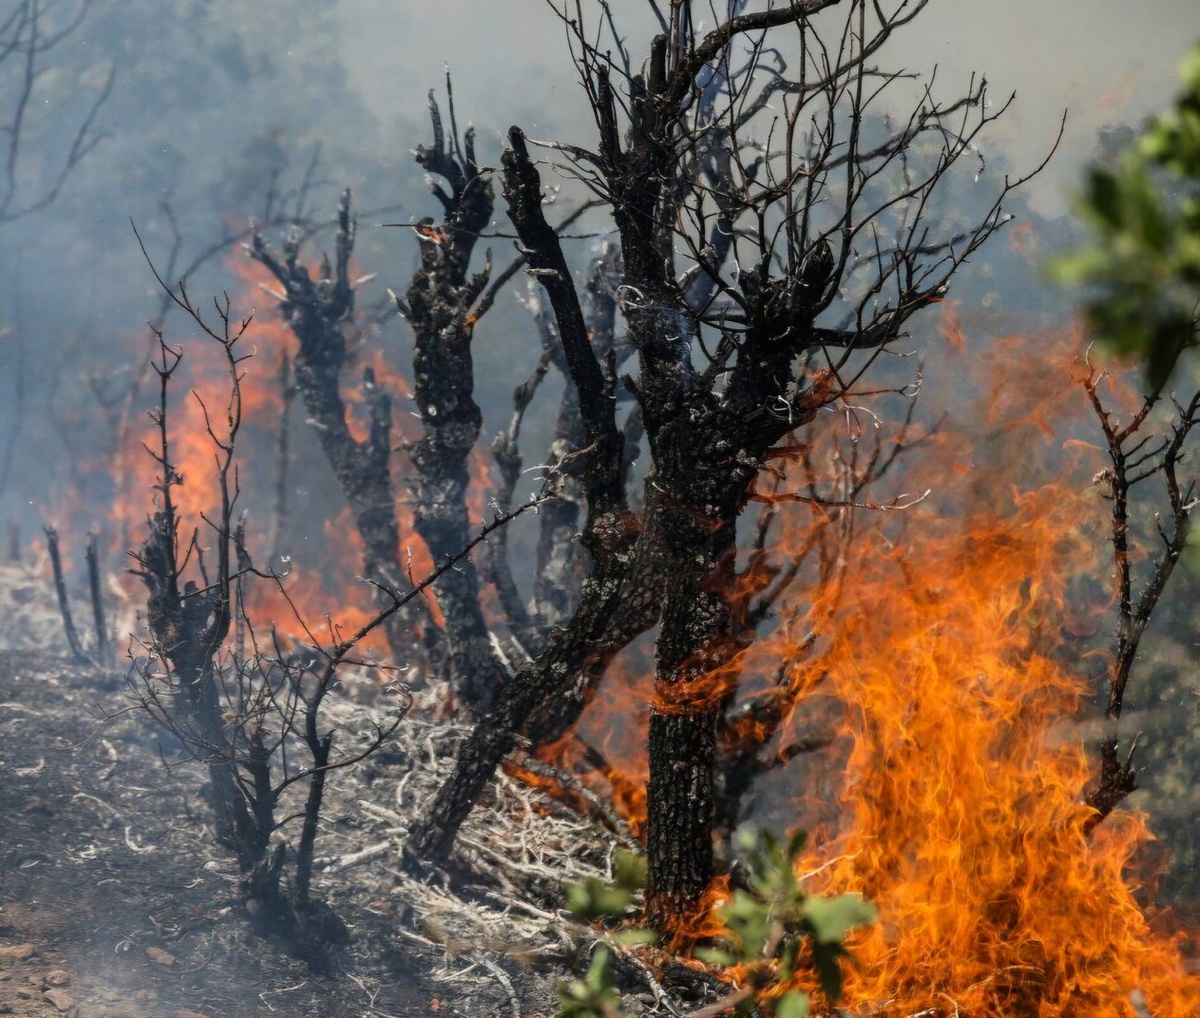 شناسایی و تشکیل پرونده قضایی ۲۱نفر ازعاملان آتش سوزی جنگل های کهگیلویه و بویراحمد